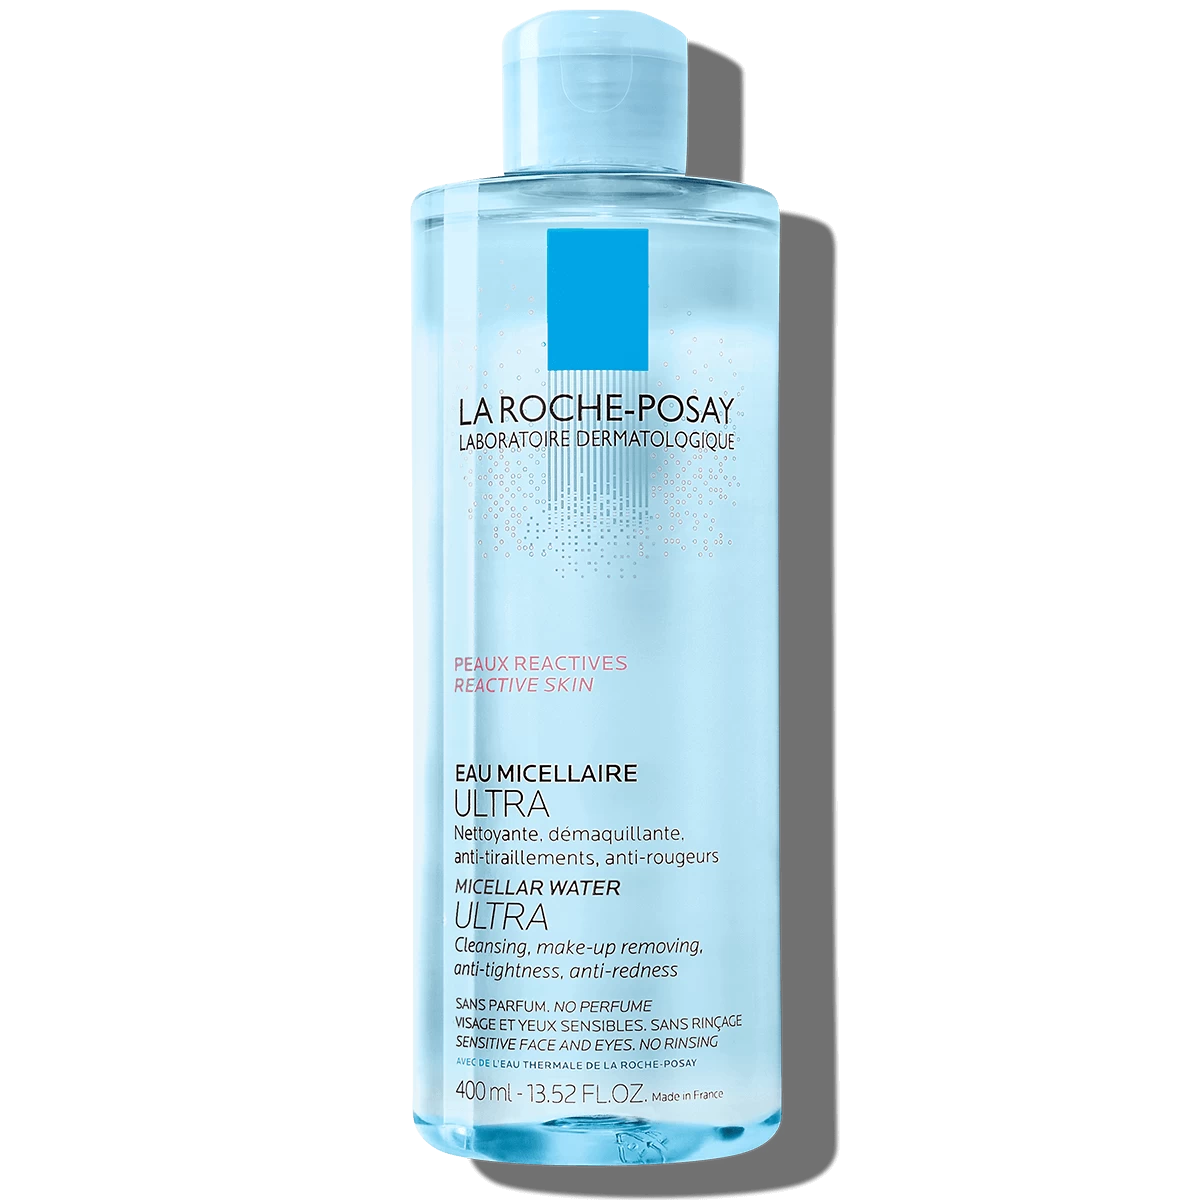 La Roche-Posay Micelarna voda Ultra za reaktivnu kožu 400 ml